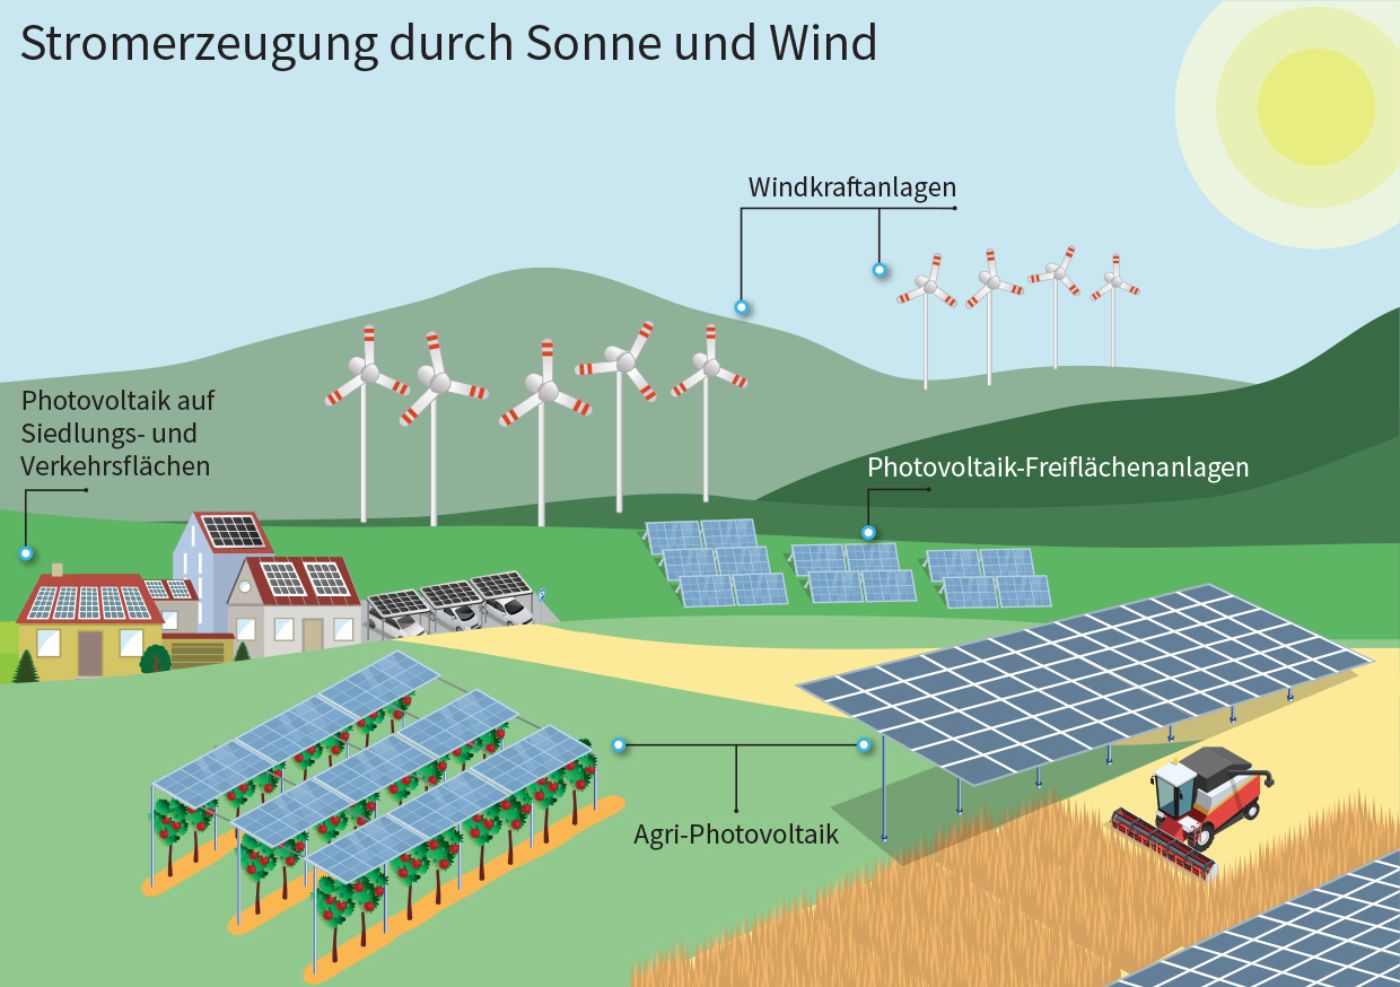 Grafik visualisiert Stromerzeugung durch Sonne und Wind; Photovoltaik auf Siedlungs- und Verkehrsflächen; Windkraftanlagen; Photovoltaik-Freiflächenanlagen und Agri-Photovoltaik